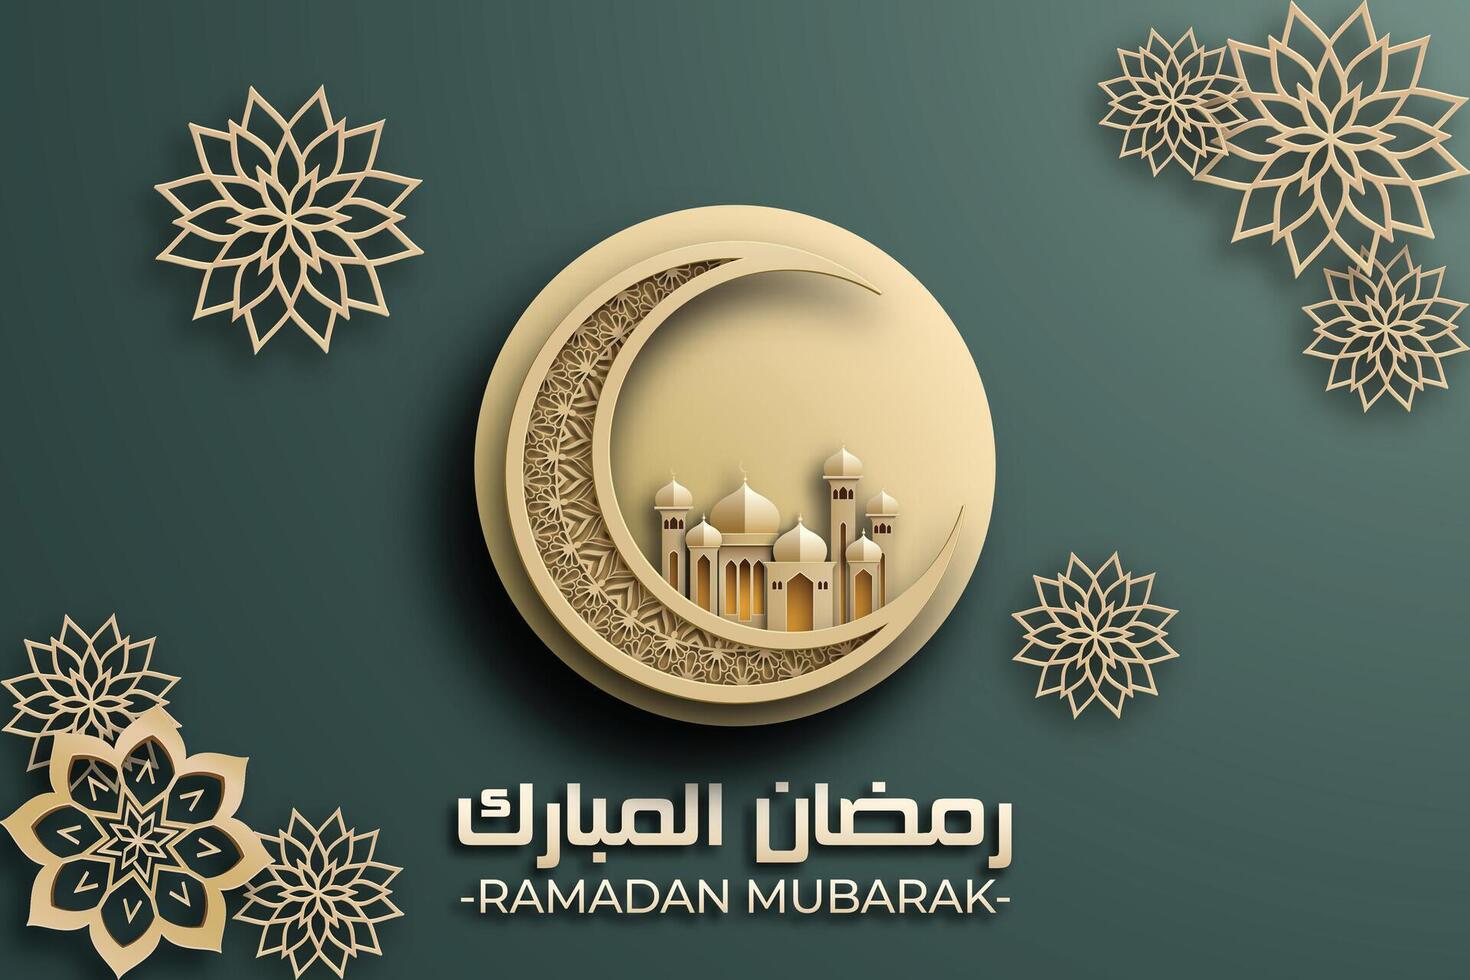 Ramadan mubarak affiche avec une 3d papier découpé conception avec islamique mosquée, fleur, et une croissant lune. luxueux vert Couleur à créer un élégant et de fête atmosphère. vecteur